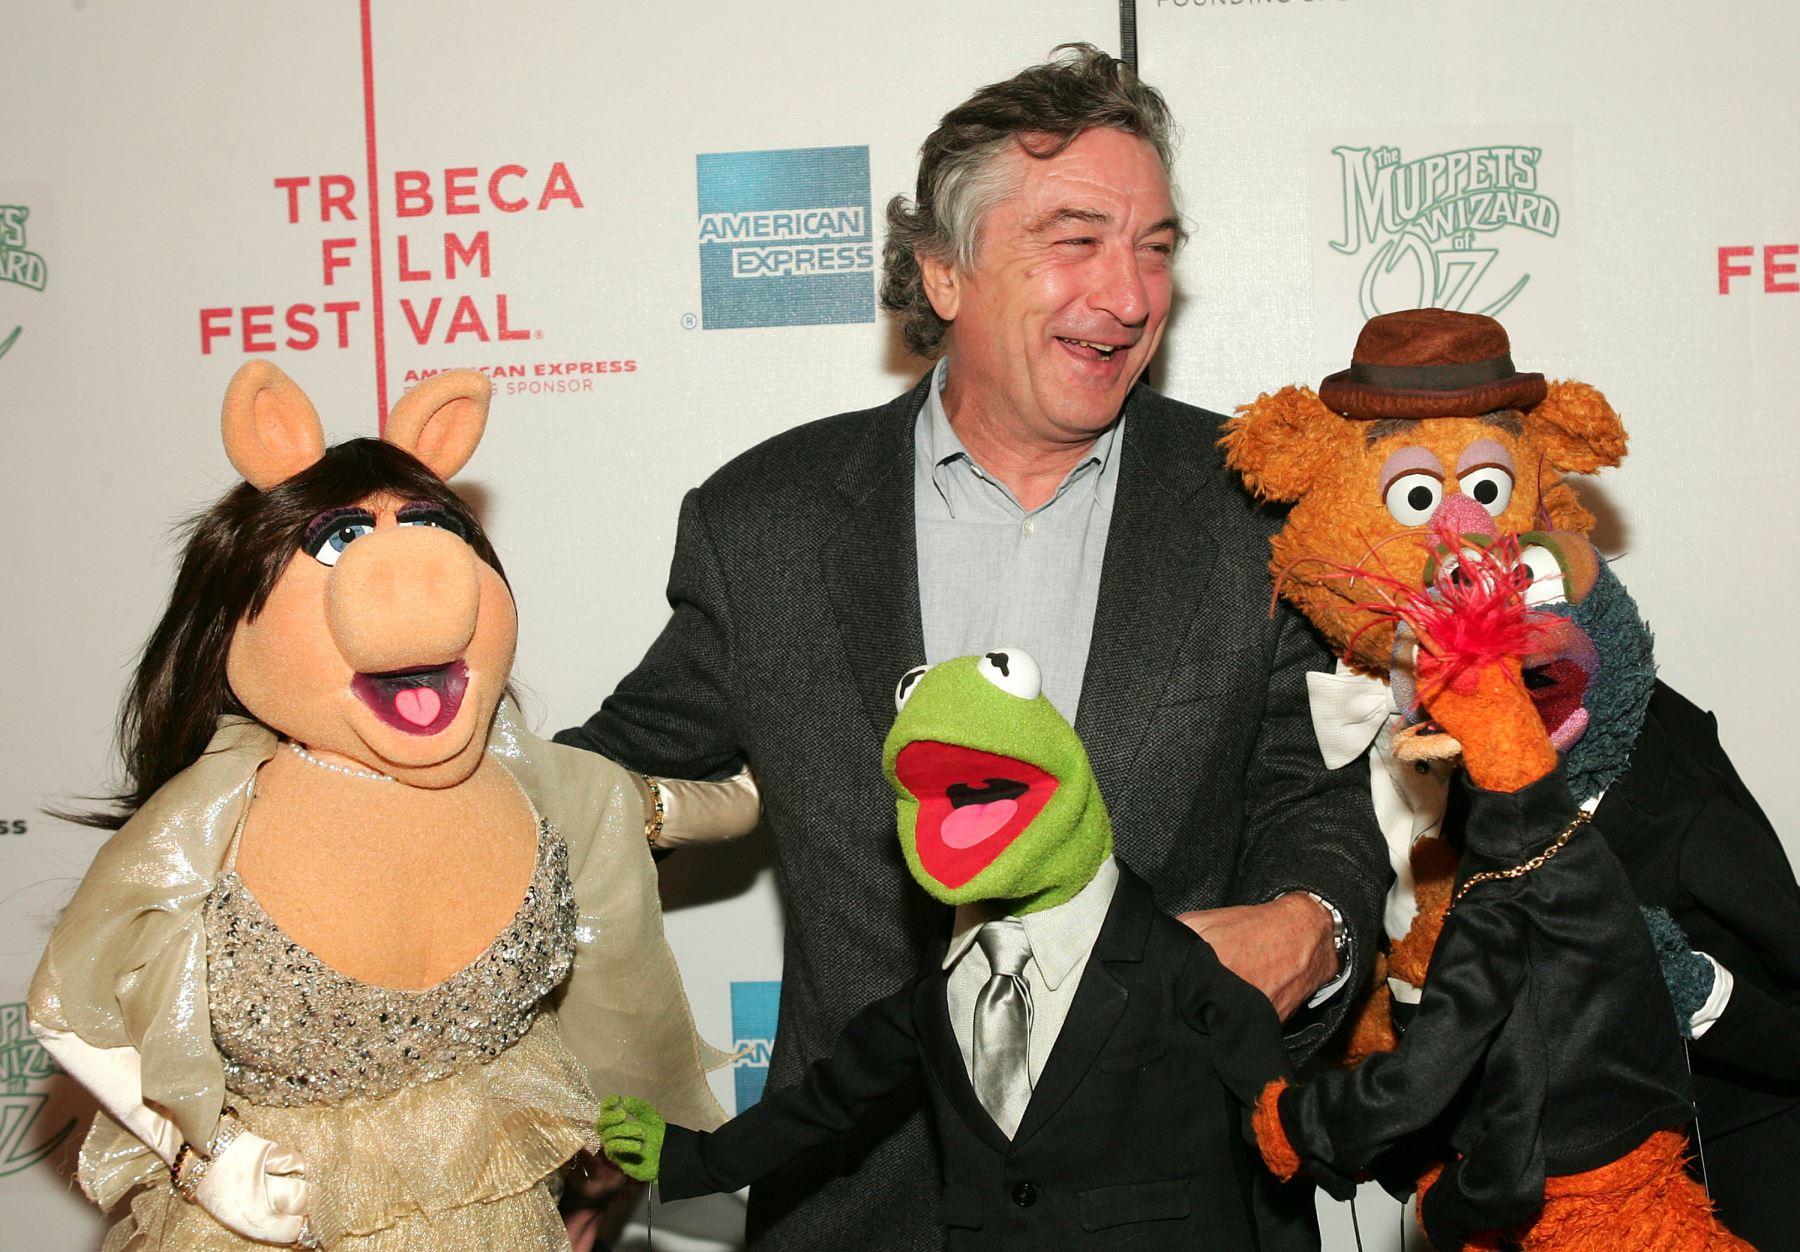 NUEVA YORK - 27 DE ABRIL 2005: (izquierda a derecha) El actor Robert De Niro, Miss Piggy, Kermit The Frog, Pepe The King Prawn, Gonzo y Fozzy Bear asisten al estreno de "The Muppets Wizard". AFP